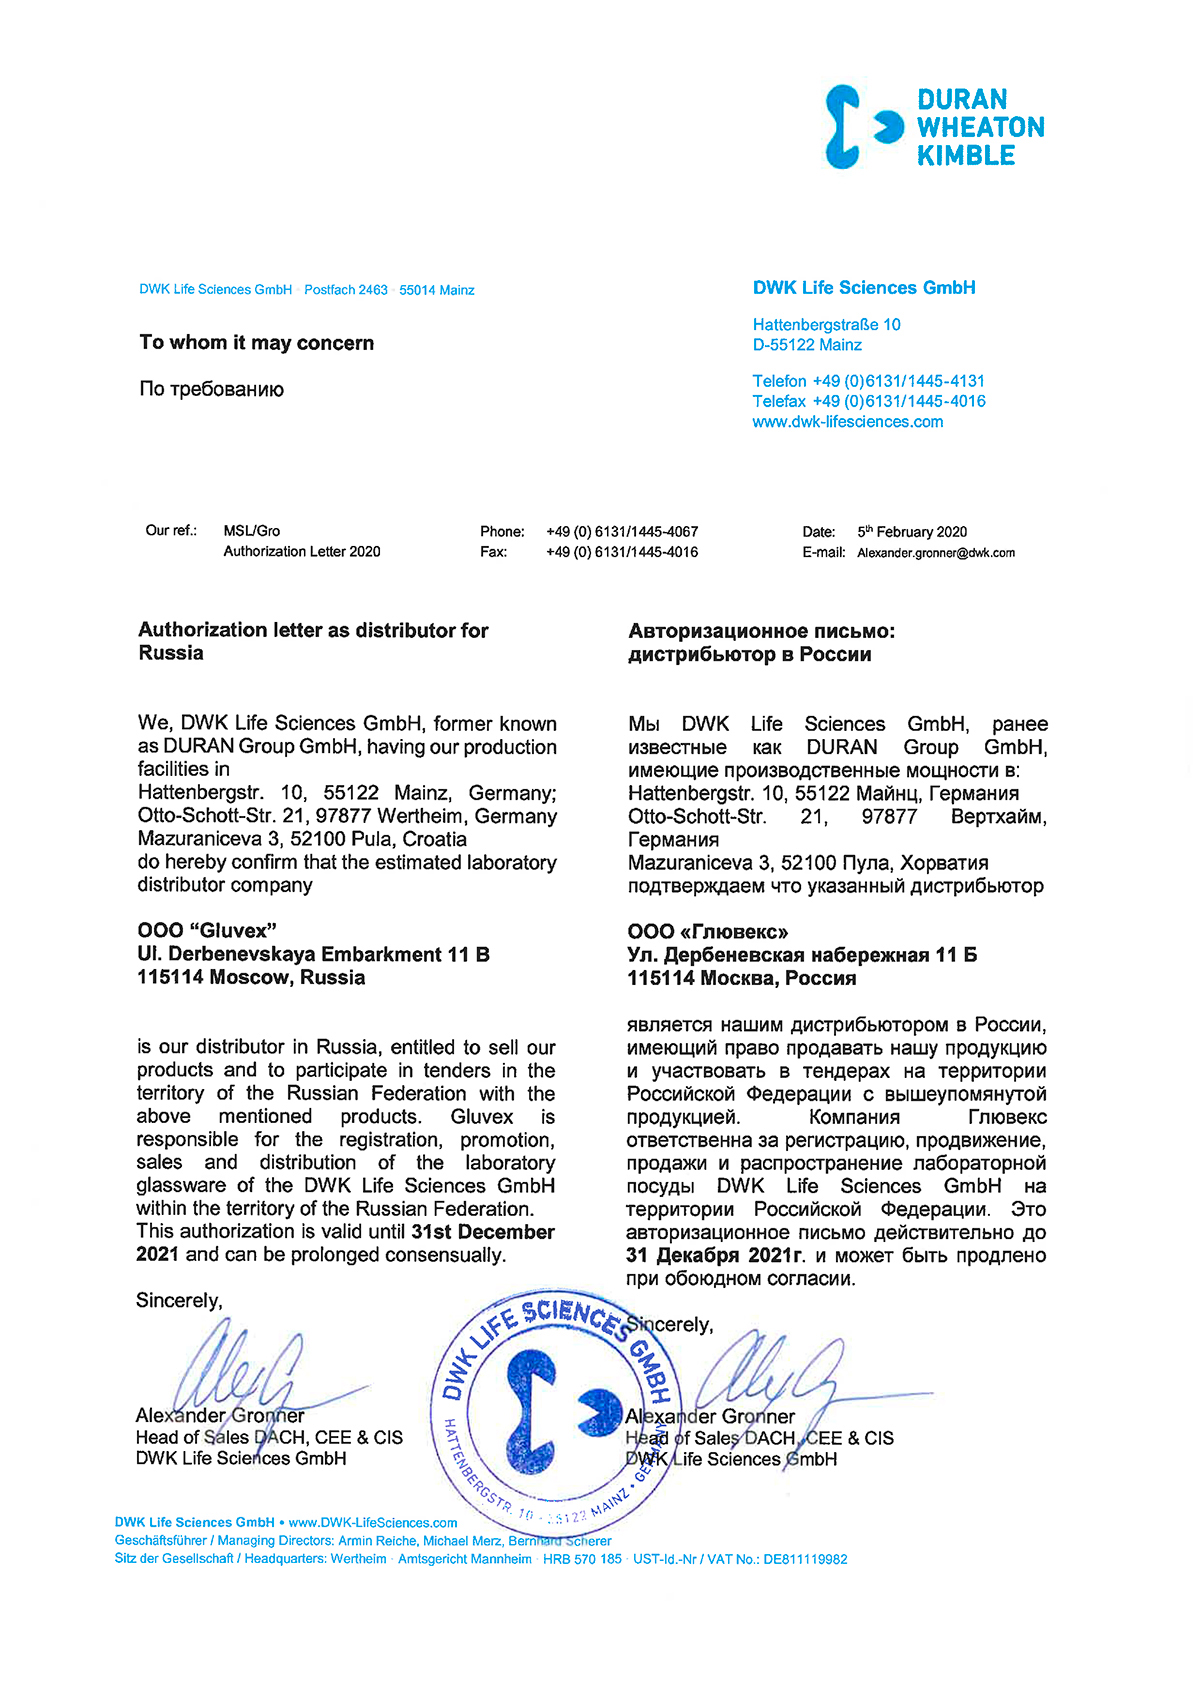 Компания Глювекс — официальный дистрибьютор немецкой компании DWK Life Sciences GmbH в России